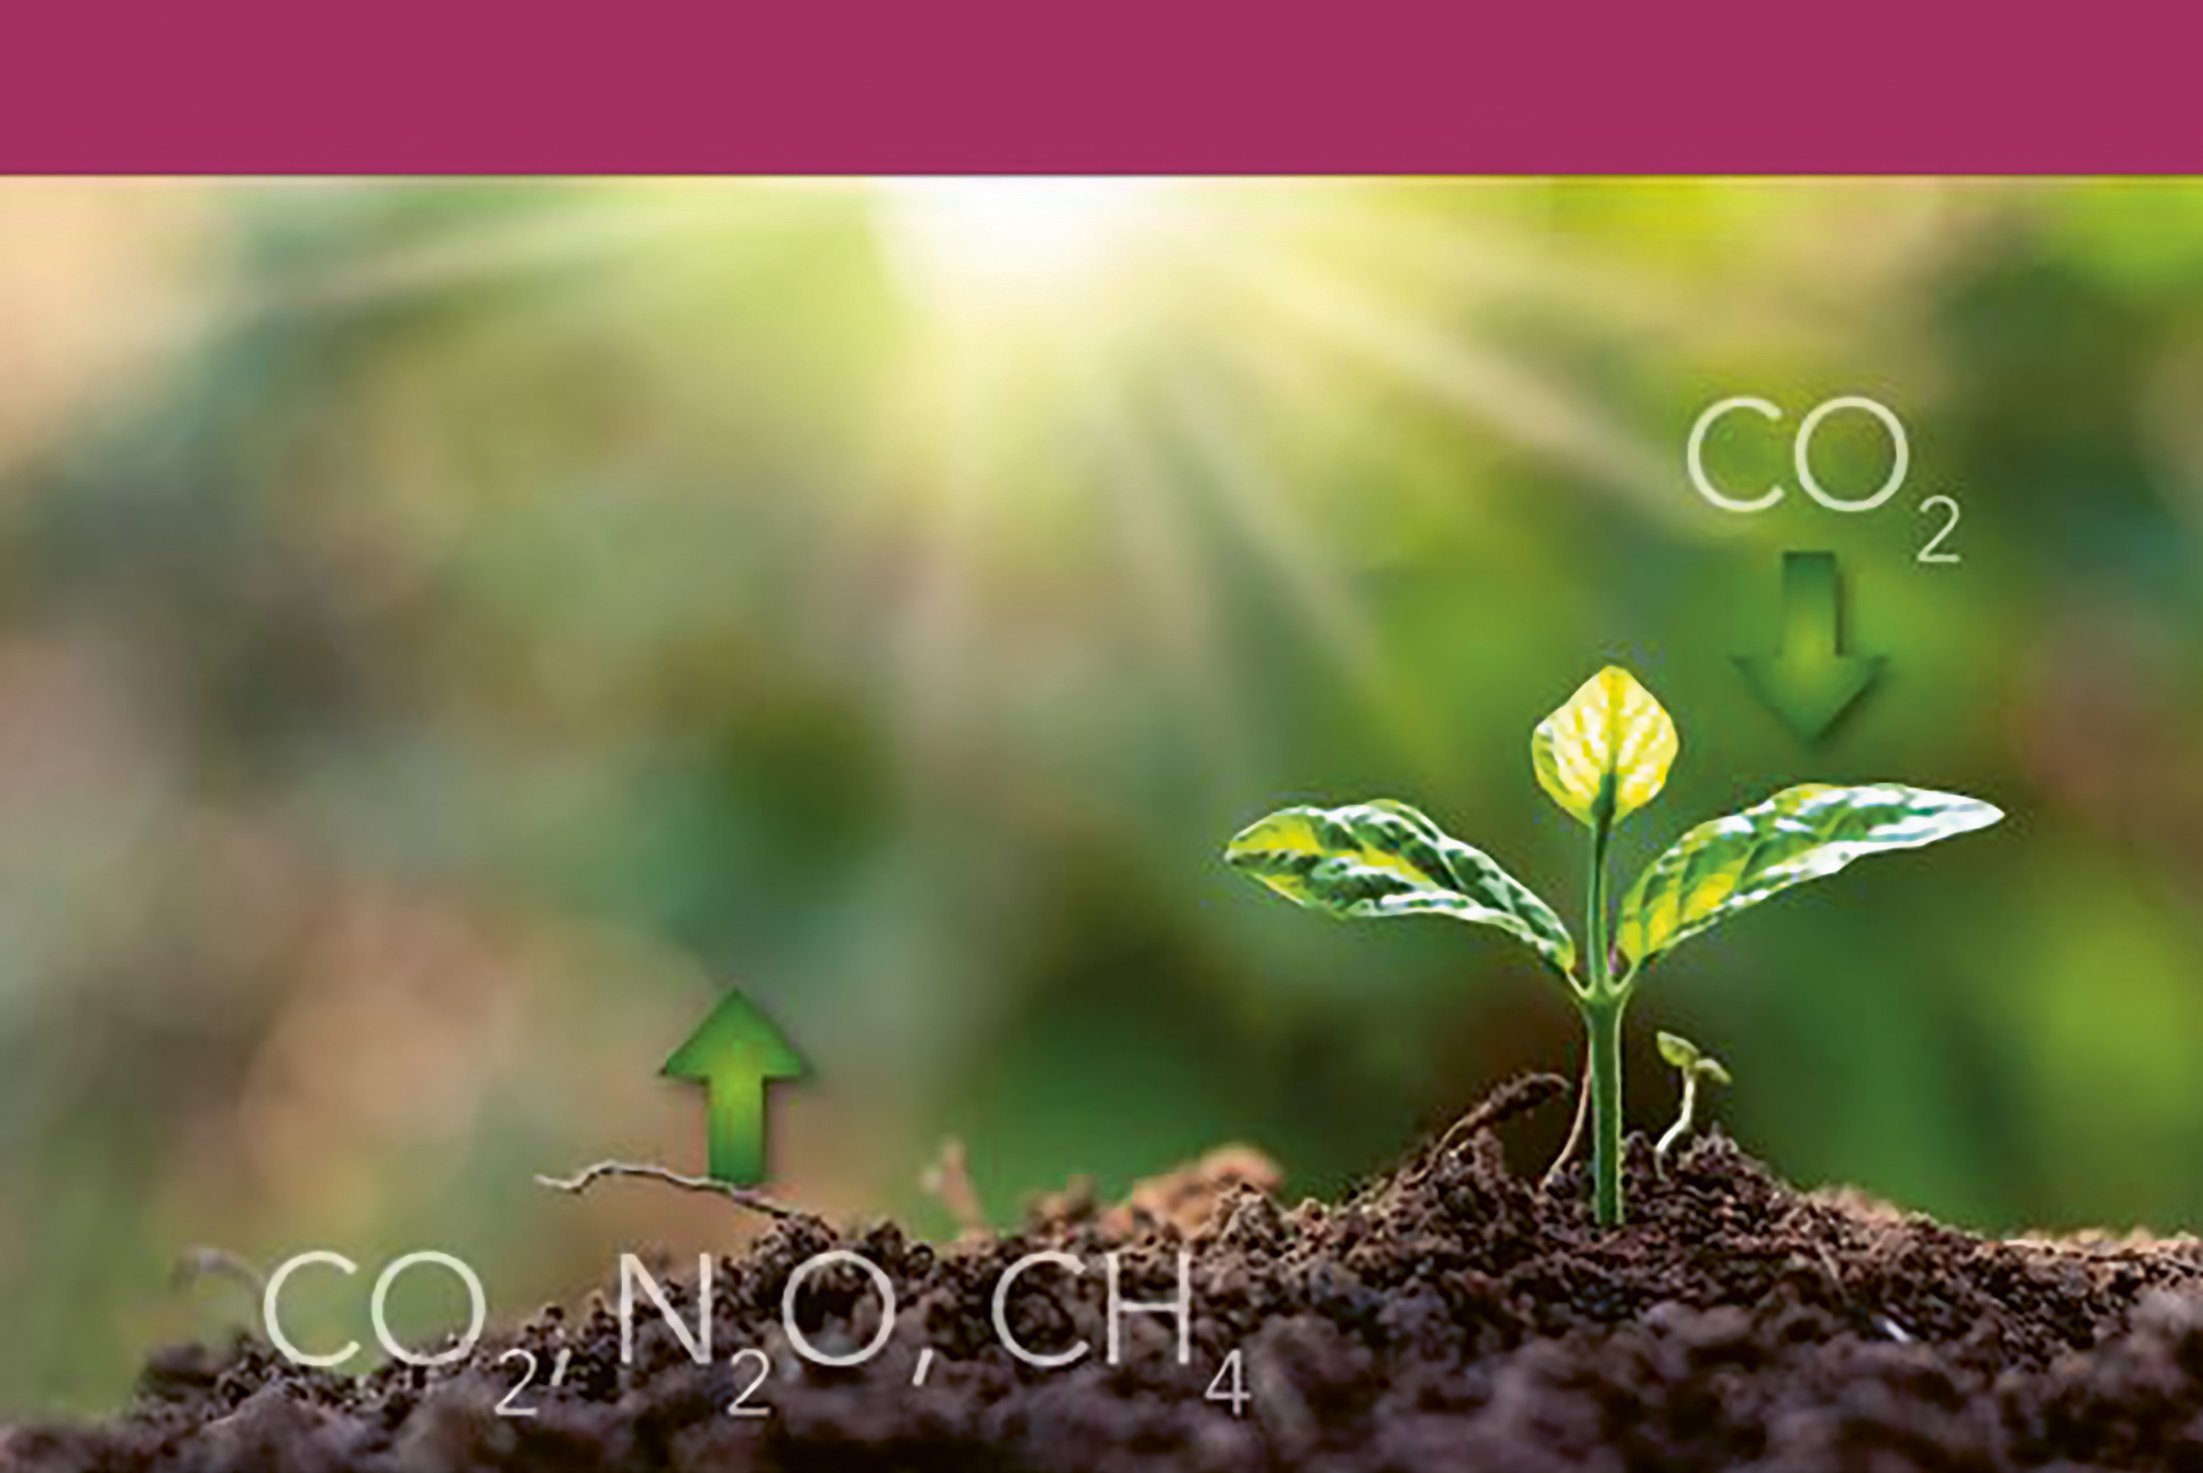 Titelseite, die eine wachsende Pflanze zeigt mit dazugefügter Grafik, die Kohlenstoffaustausch visualisiert